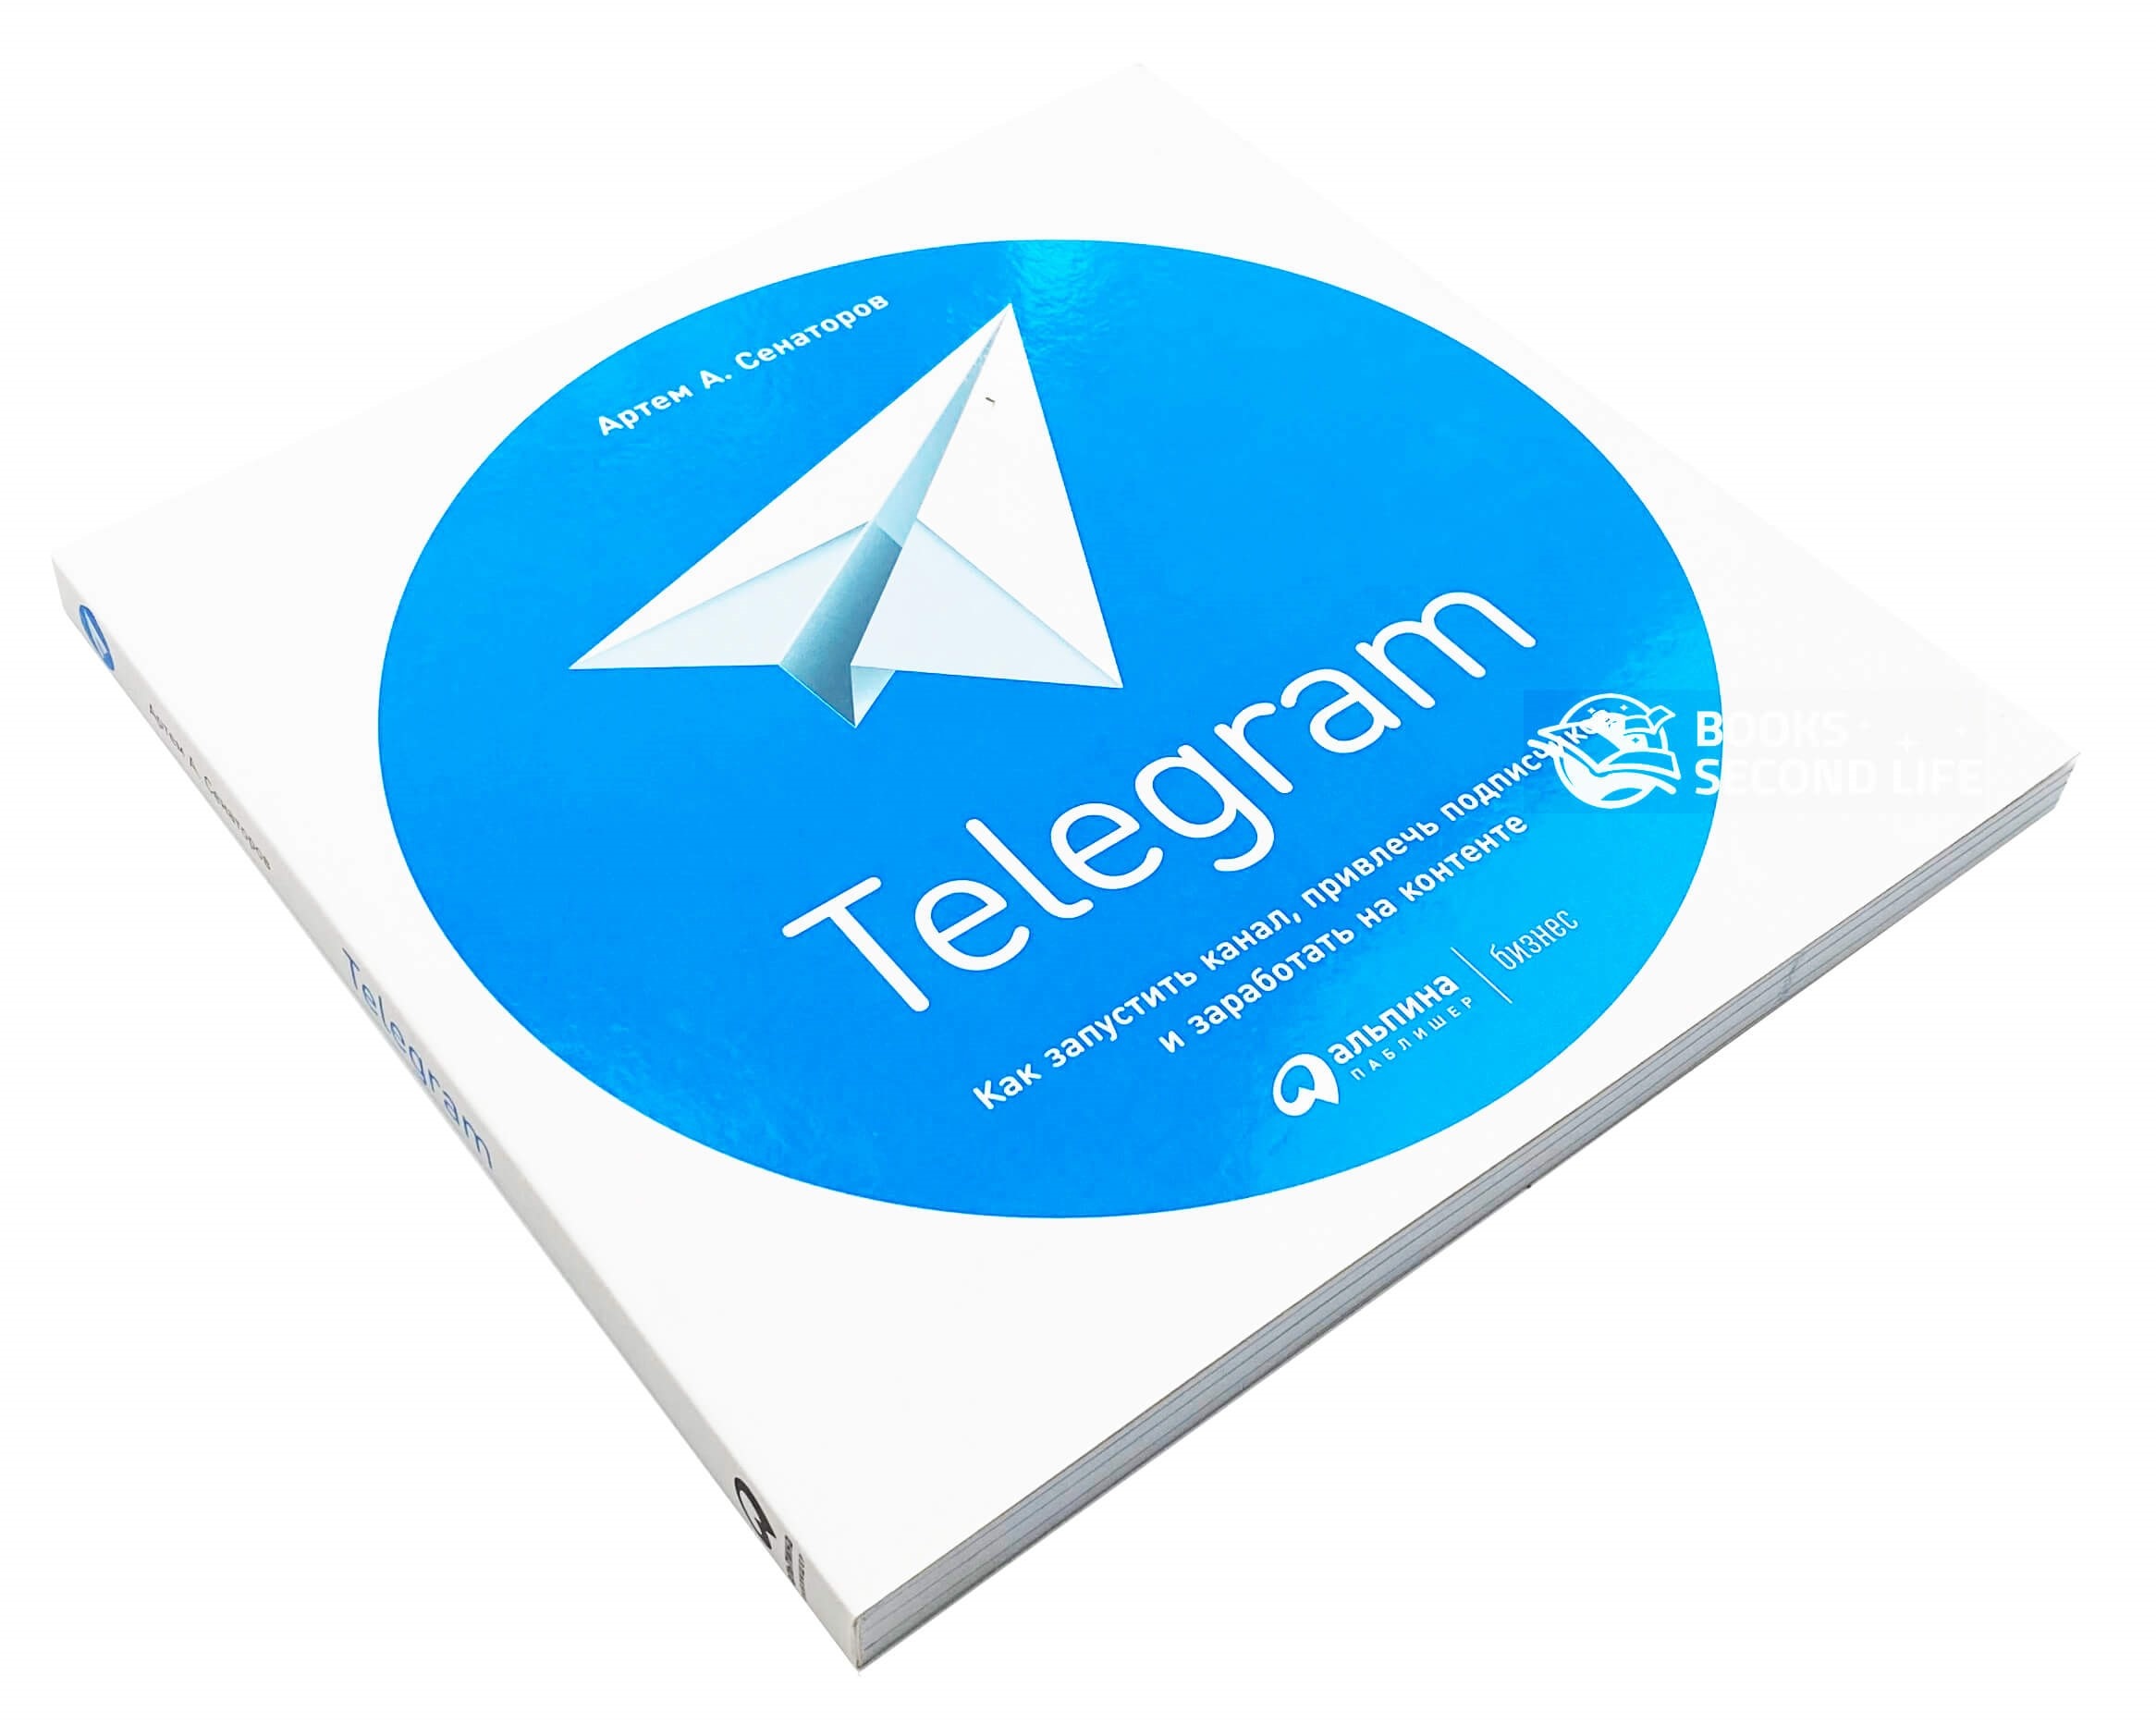 Telegram. Как запустить канал, привлечь подписчиков и заработать на контенте. Автор — Артем Сенаторов. 